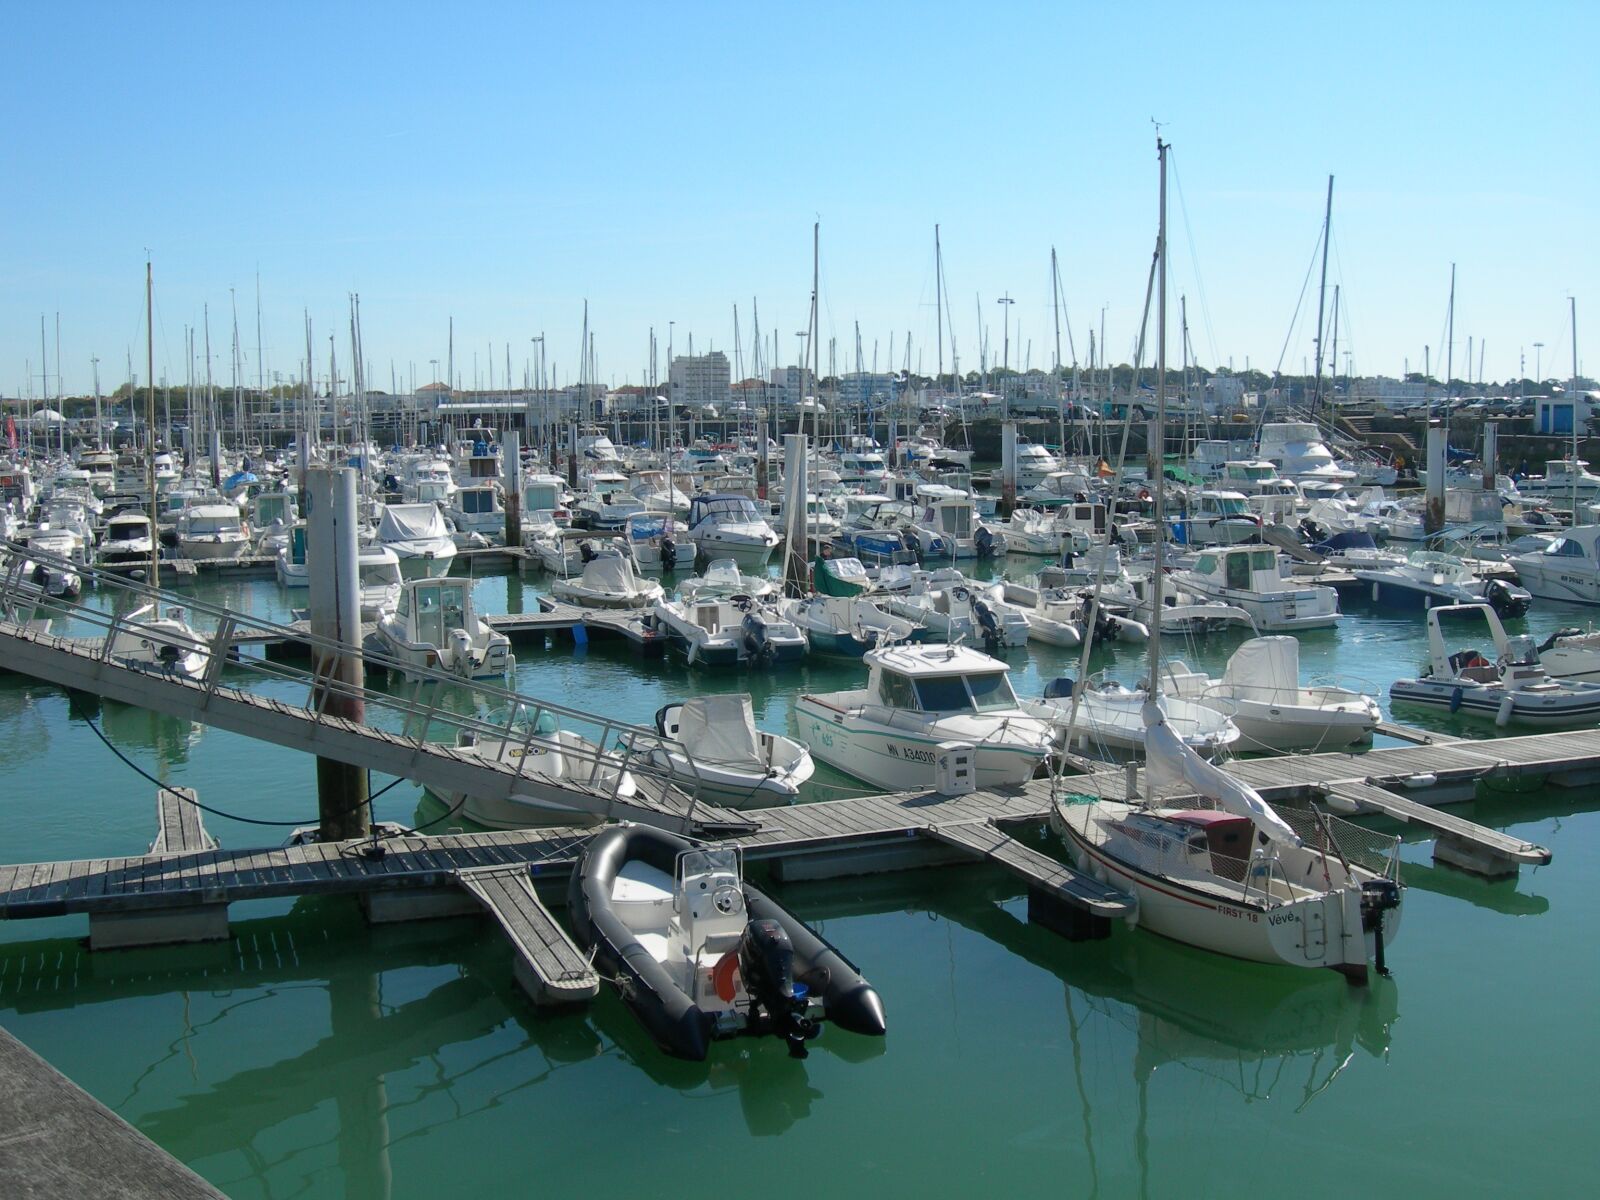 Nikon E7600 sample photo. Marina, harbor, france coast photography